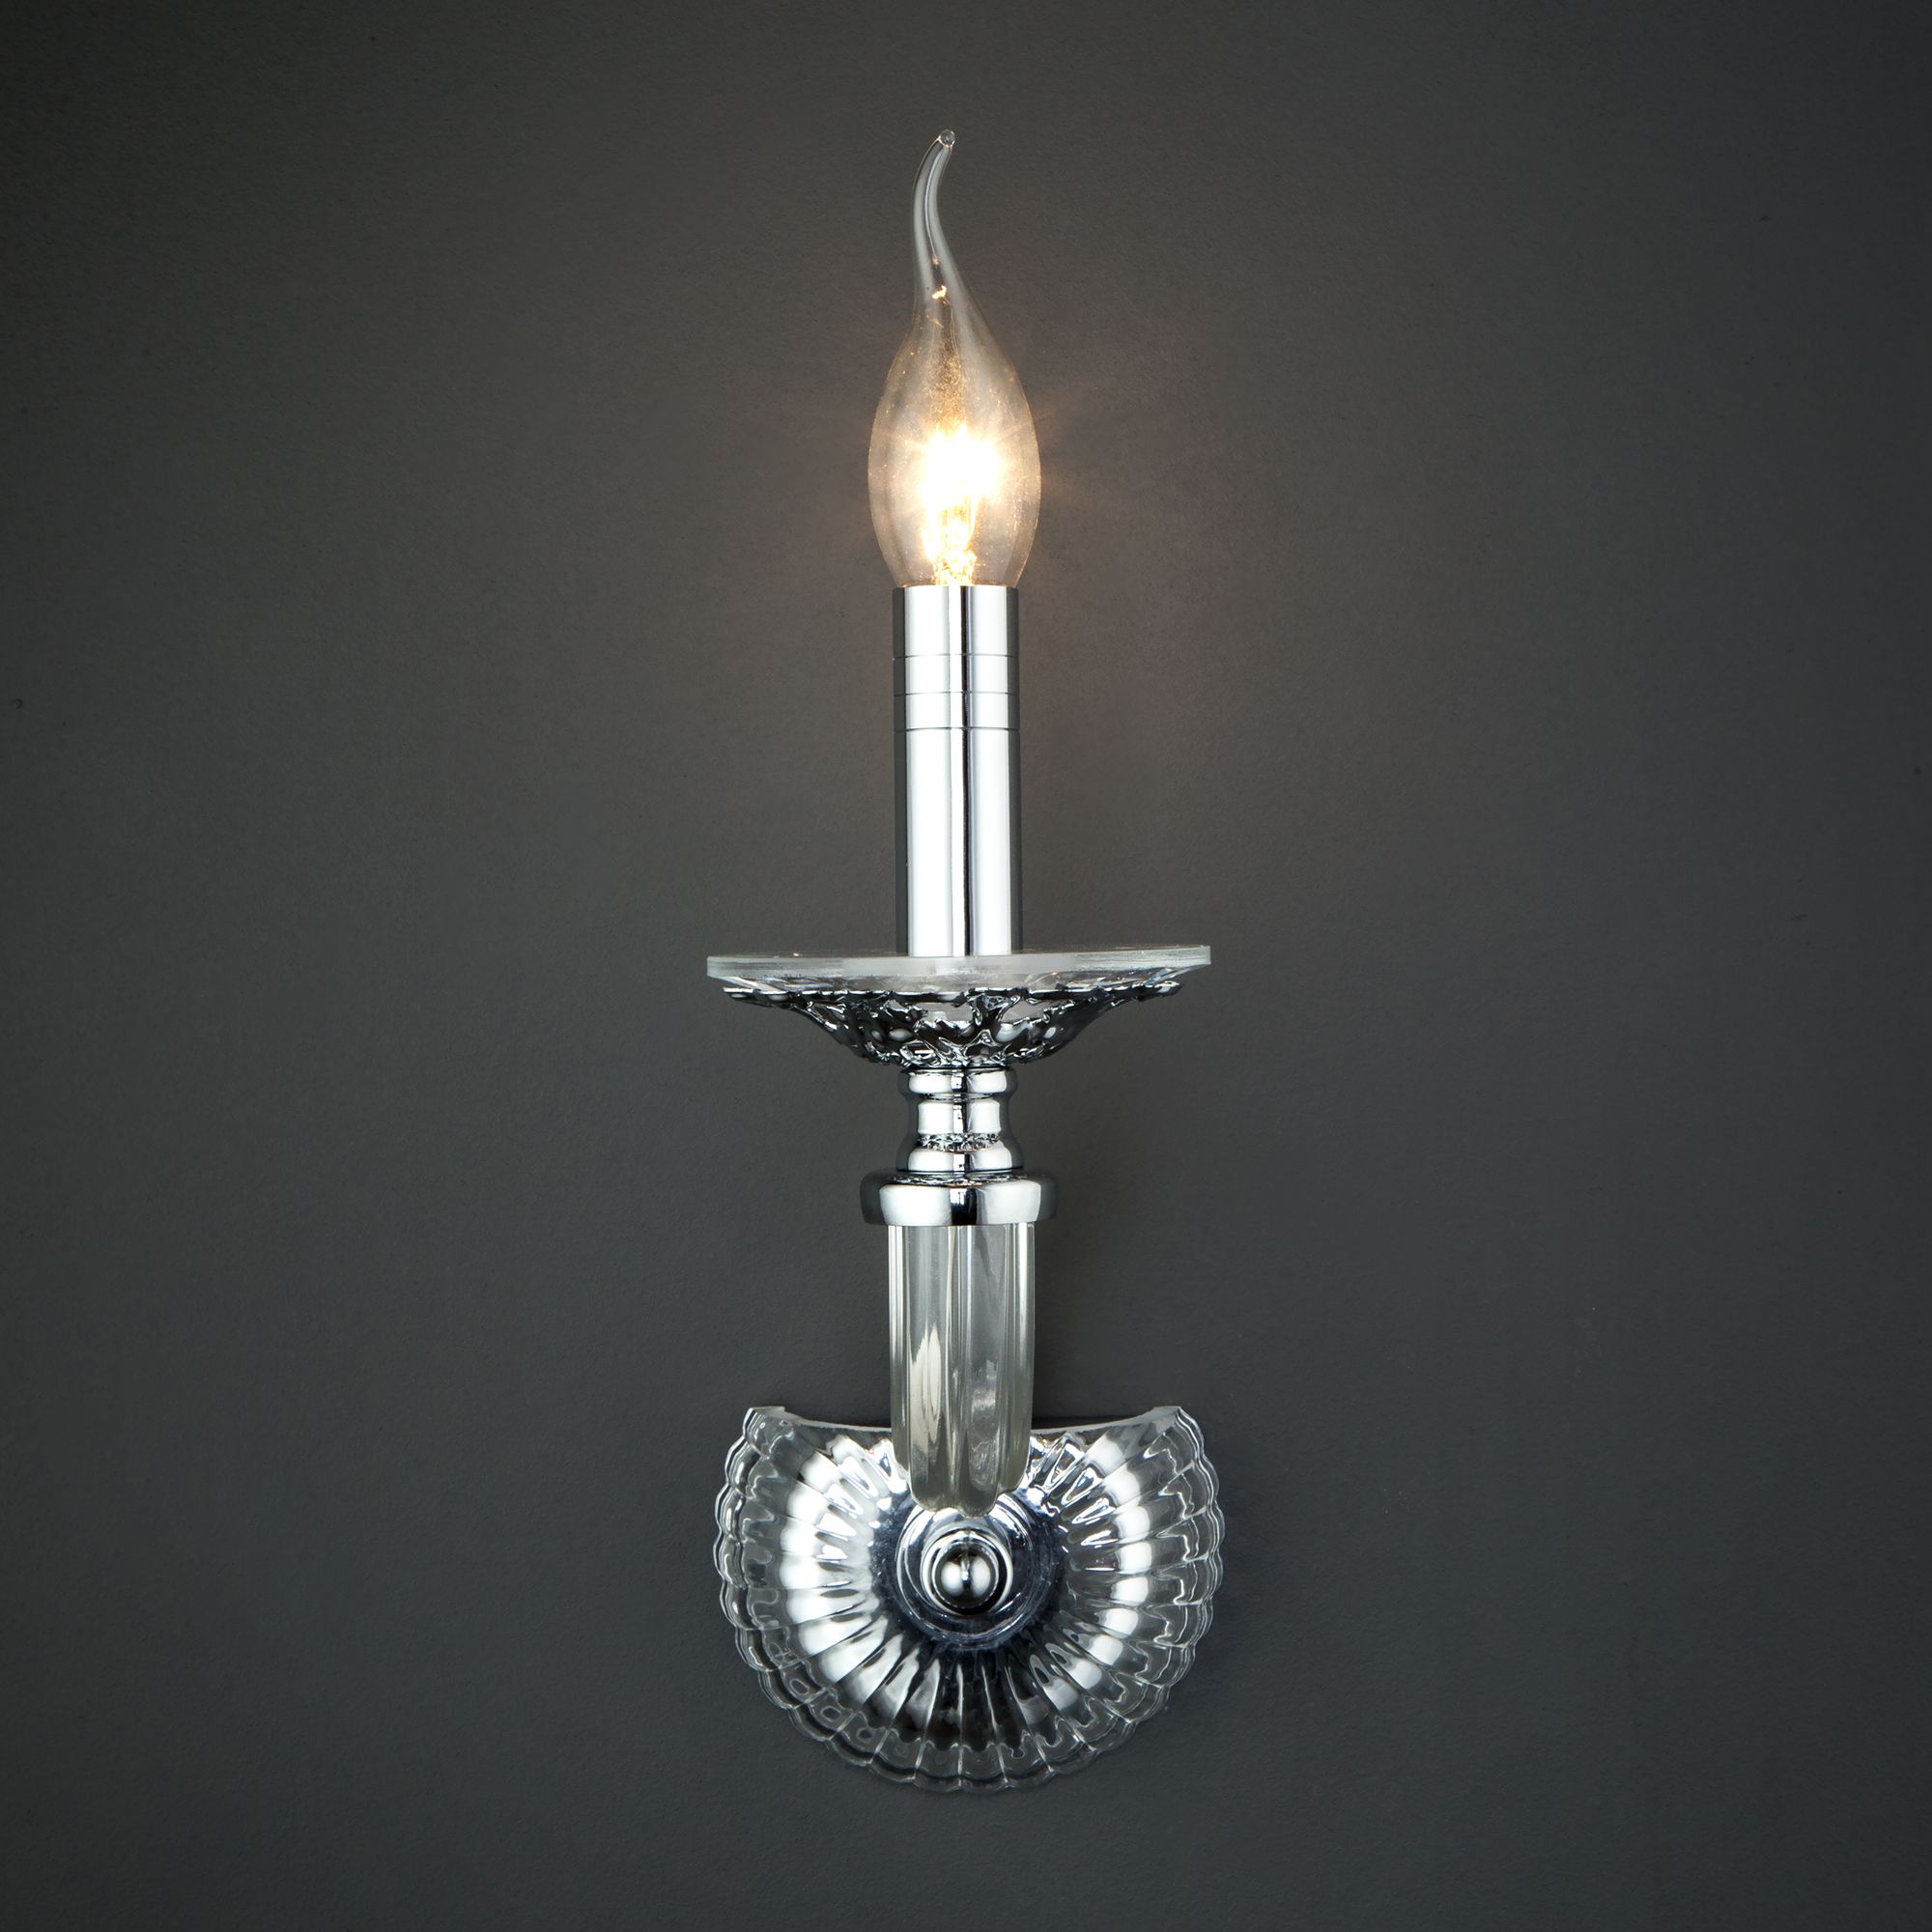 Настенный светильник в классическом стиле Bogate's Olenna 338/1. Фото 3